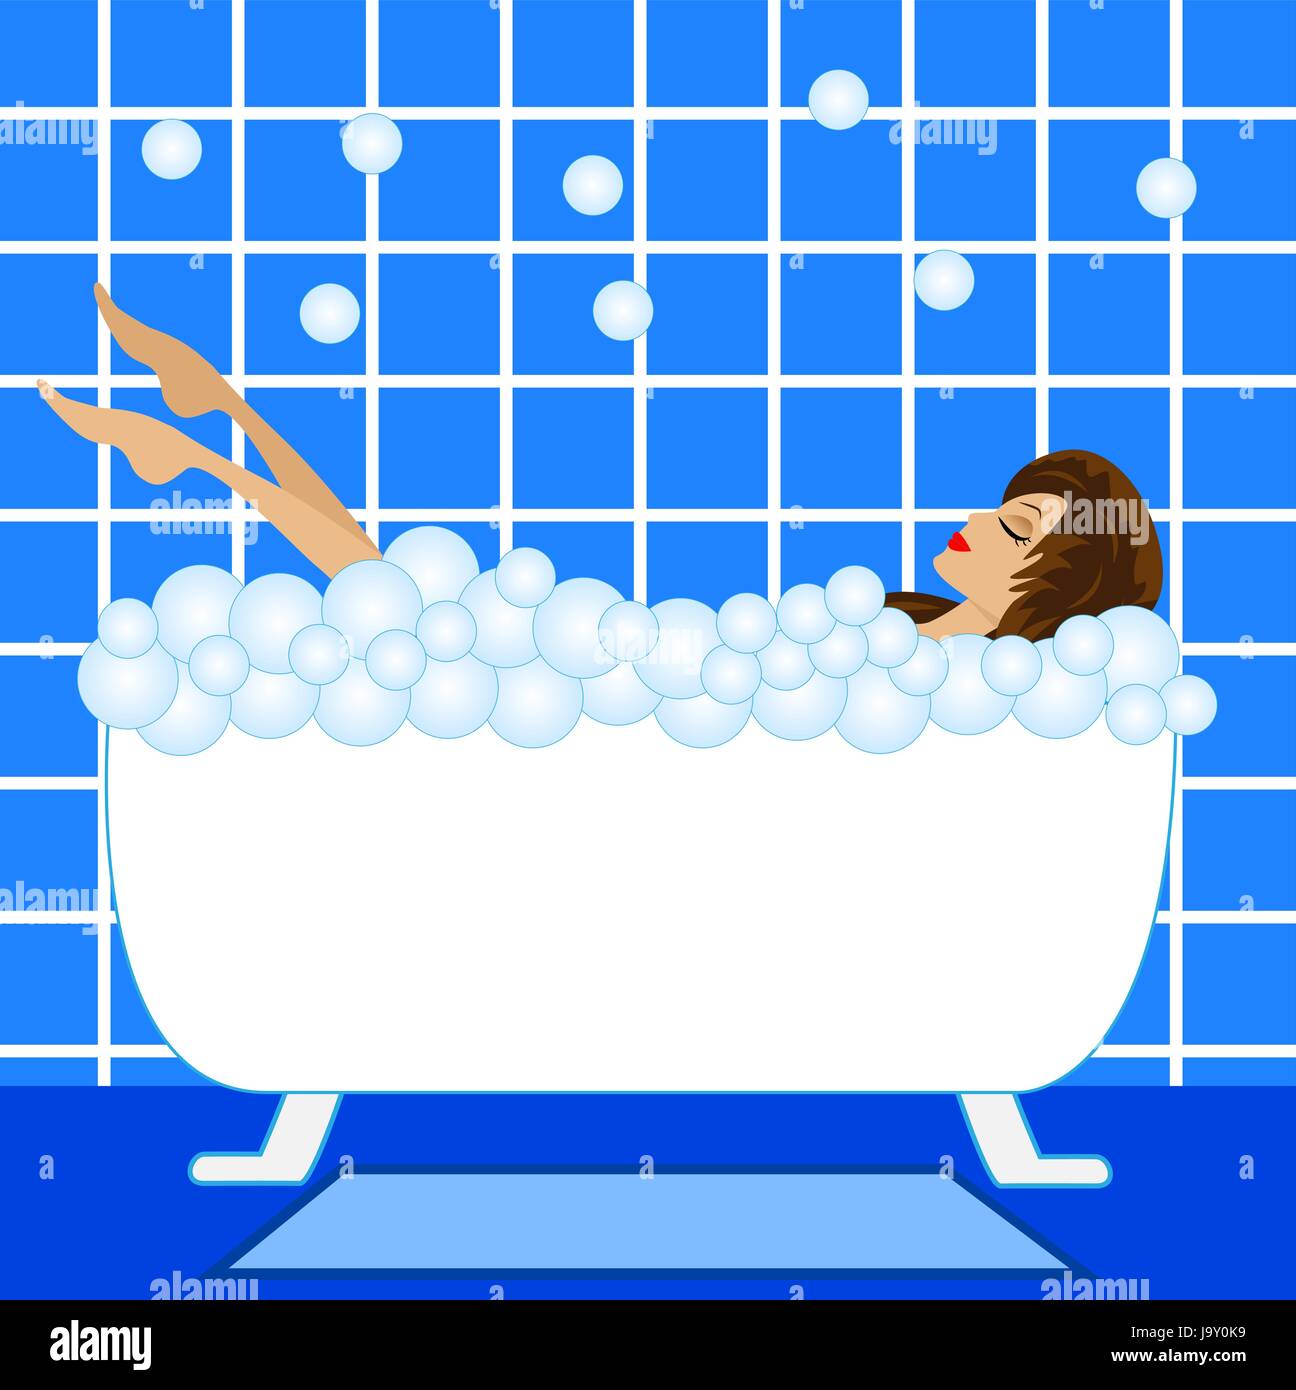 Молодая женщина купается в ванне с пеной